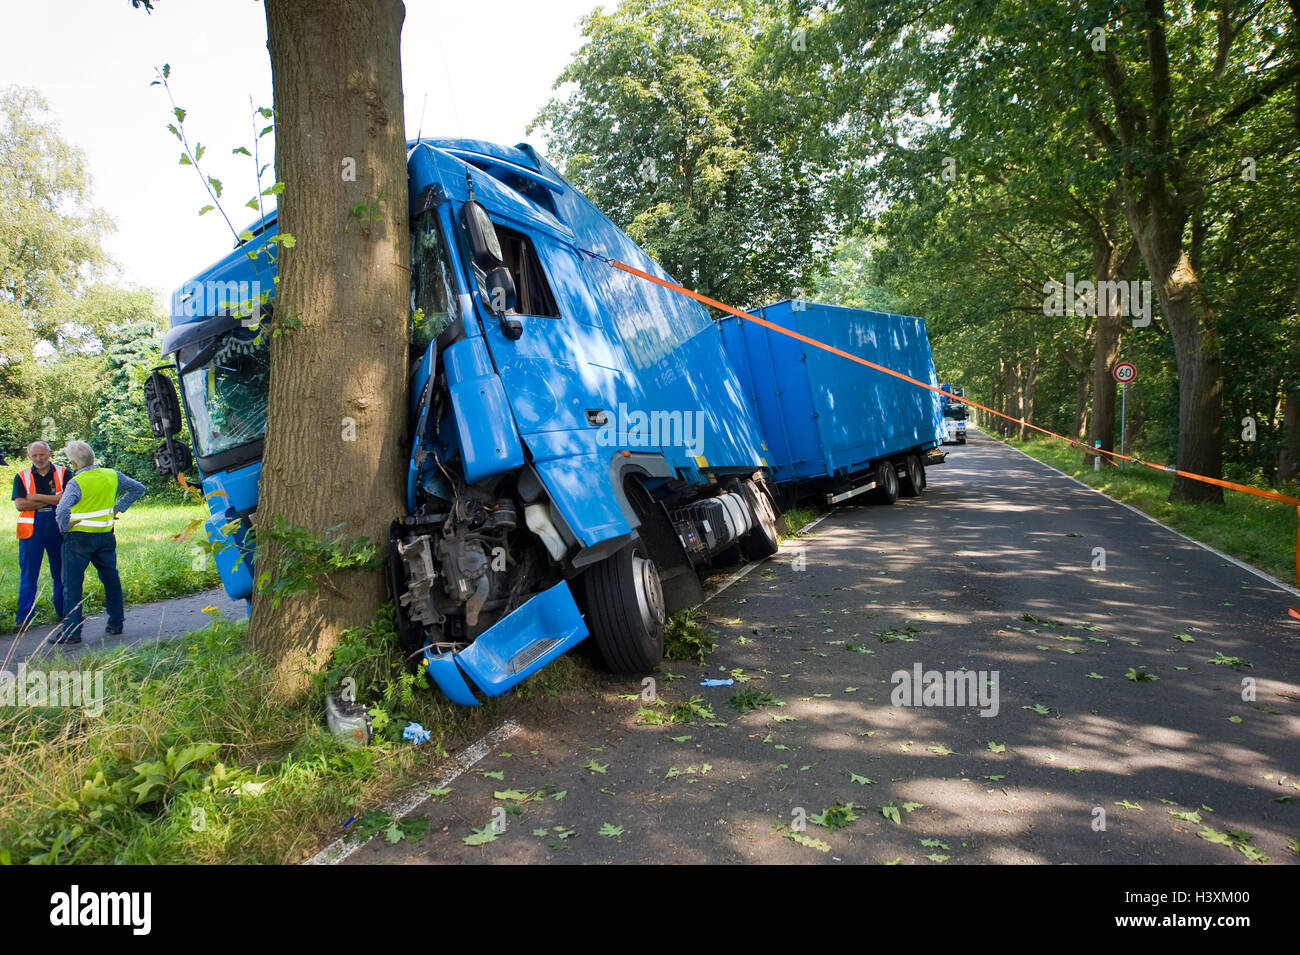 VREDEN, Deutschland - 21. Juli 2016: Ein LKW prallte gegen einen Baum auf einer kleinen Straße außerhalb der Stadt. Stockfoto